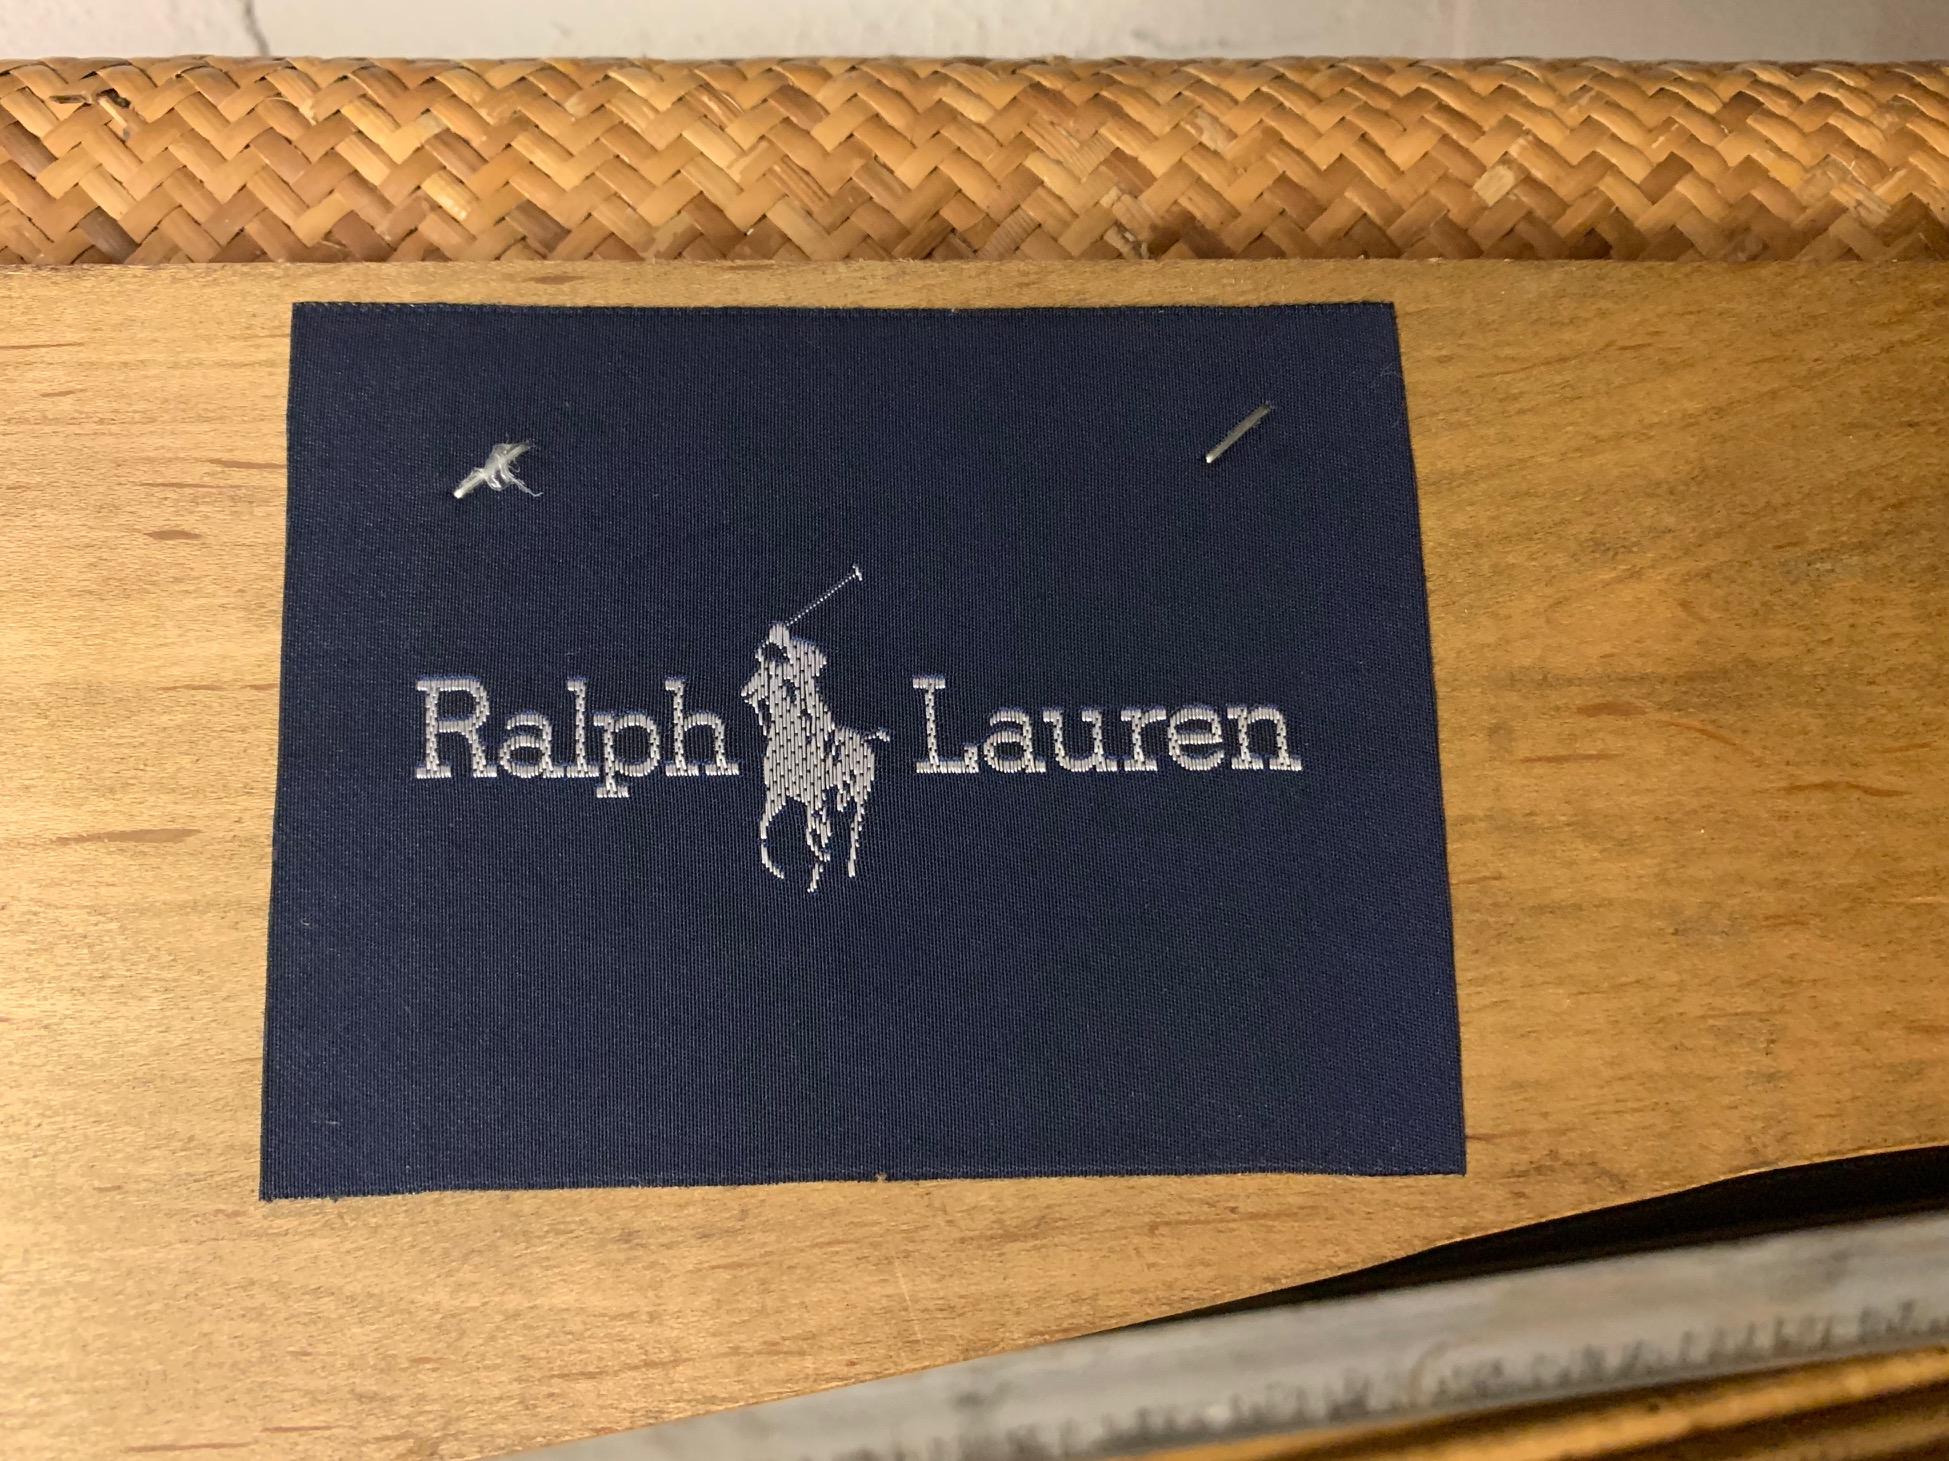 Woven Wicker Queen Size Bed by Ralph Lauren 5